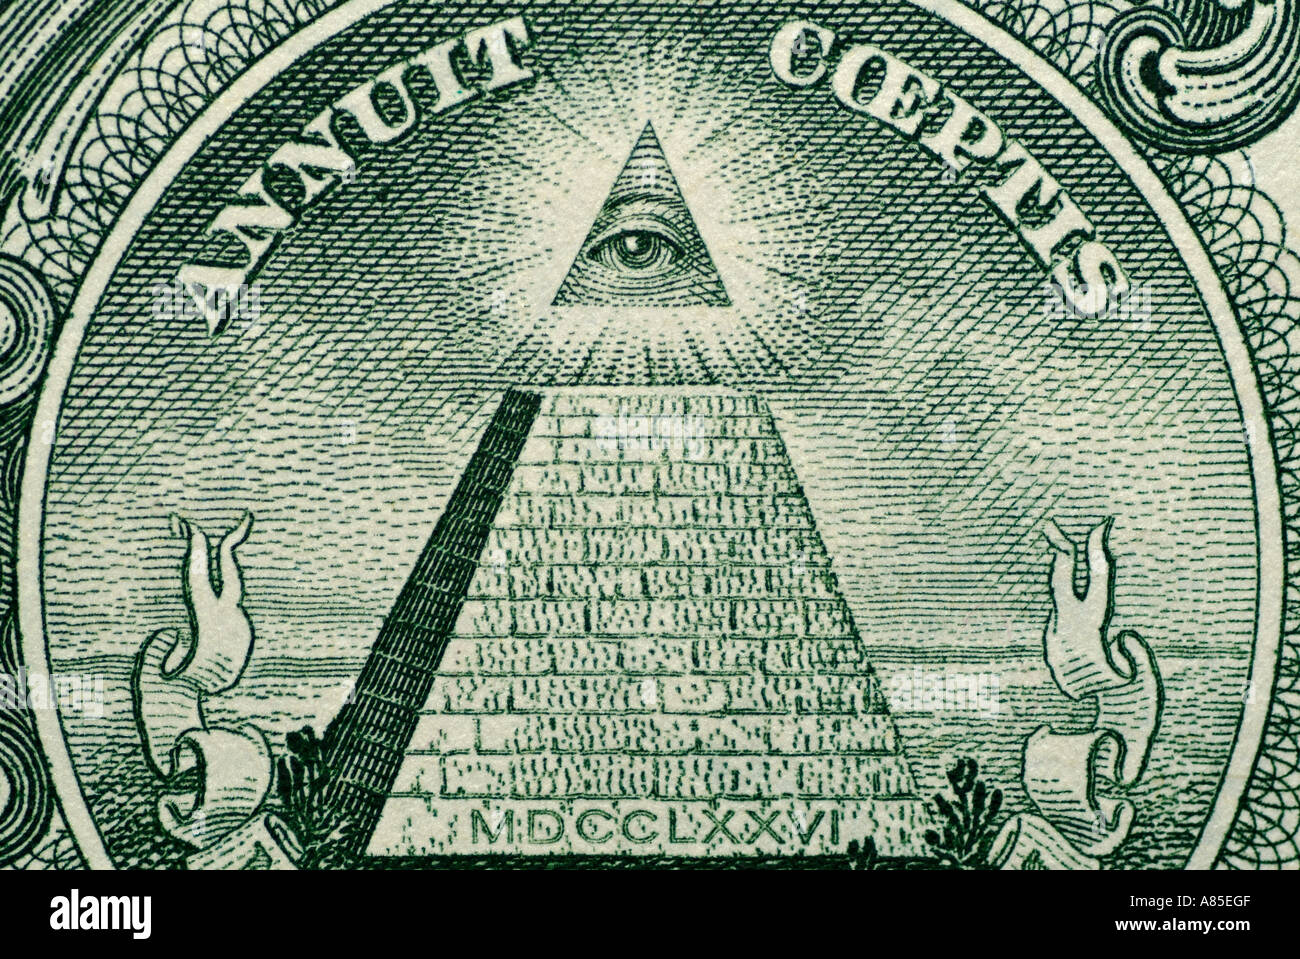 Résumé de l'arrière d'un Américain d'un Dollar US Remarque montrant une pyramide avec 13 étapes et un œil dans l'apex Banque D'Images